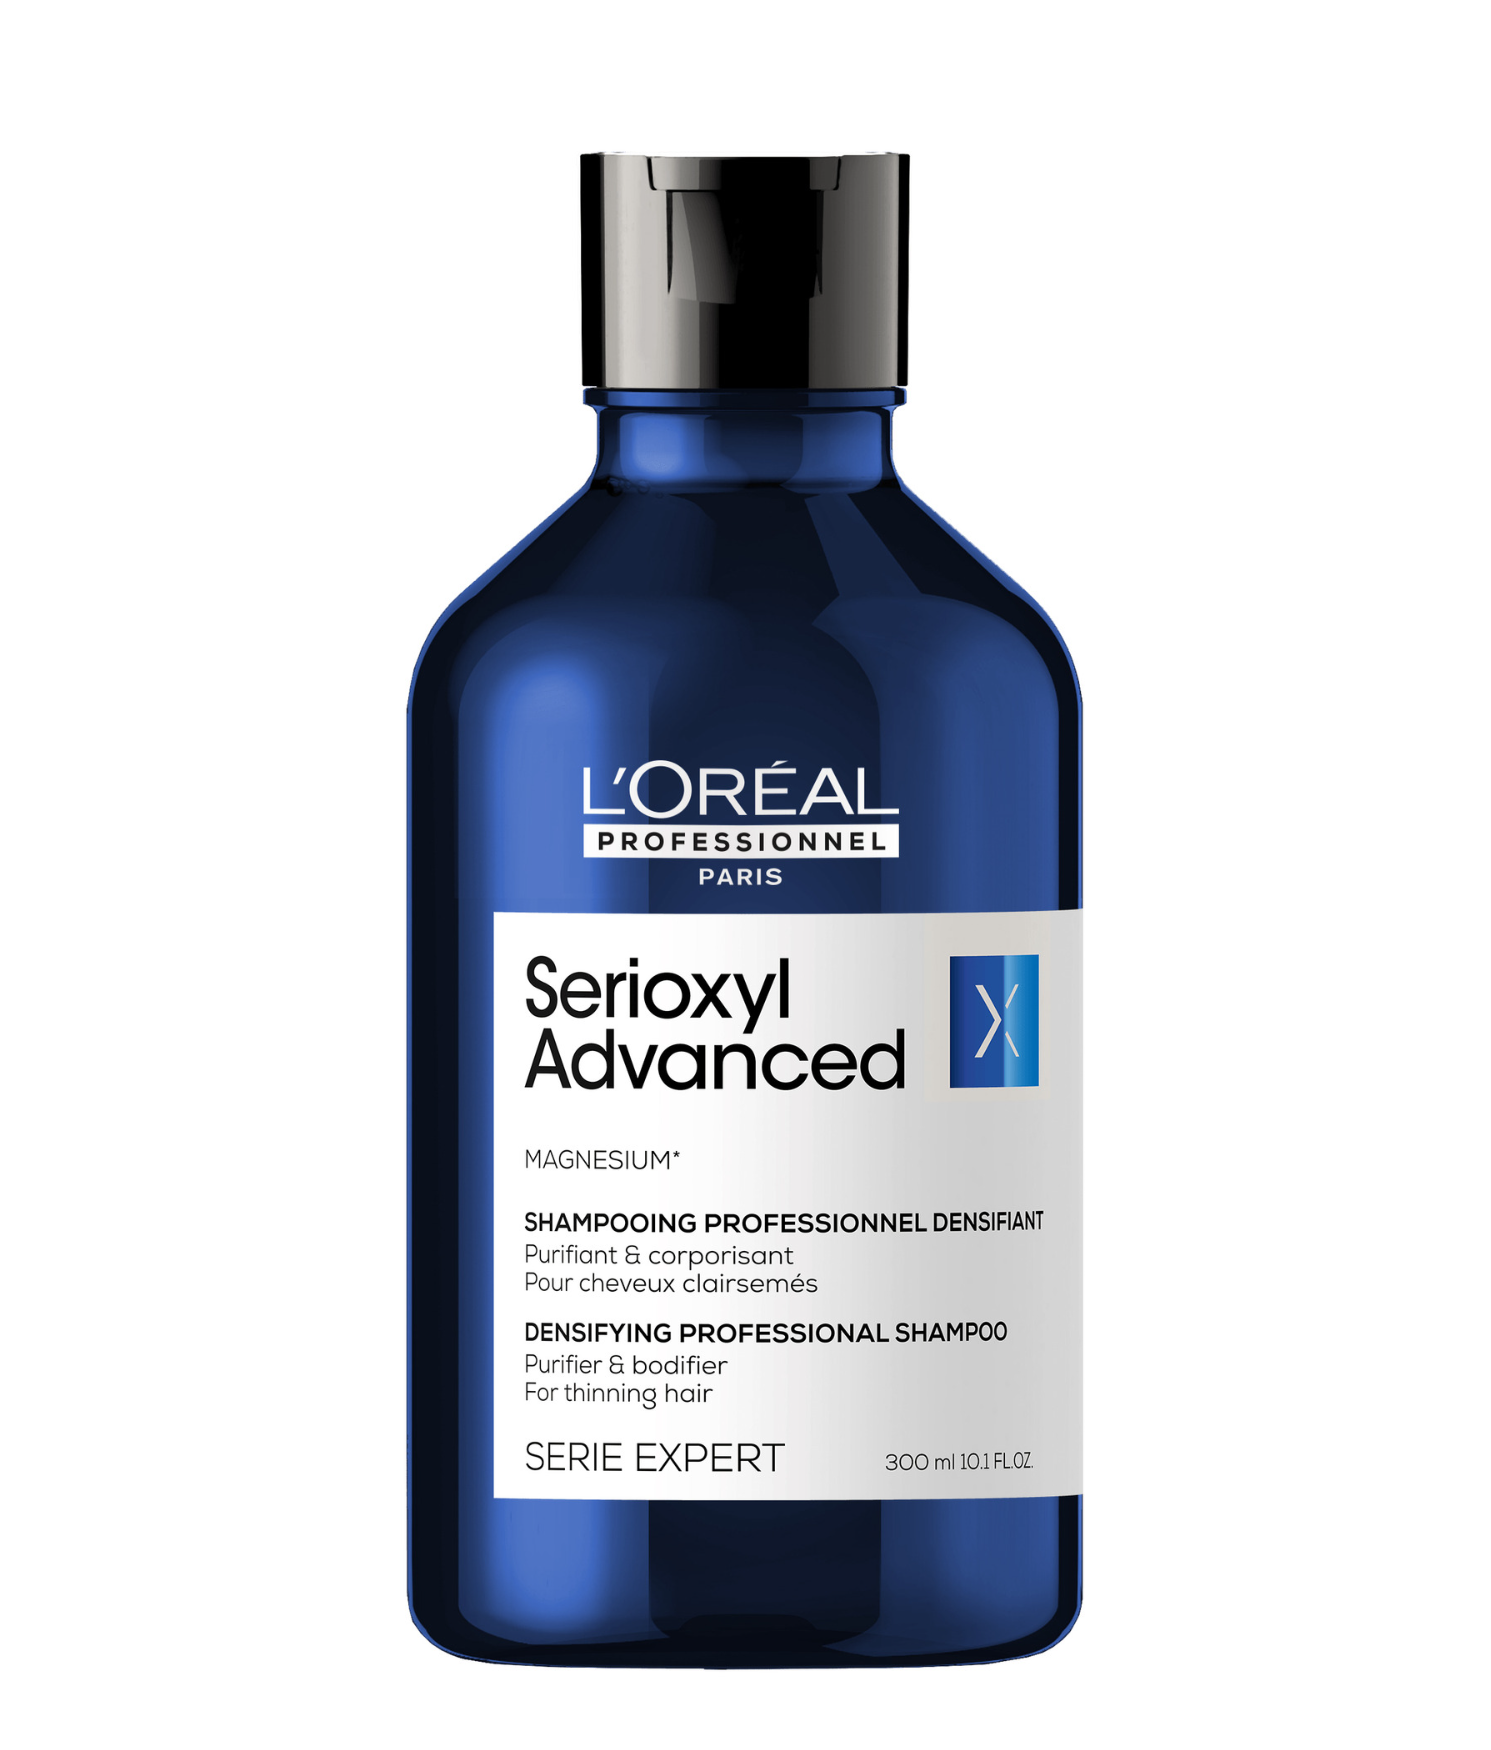 L'Oreal Serie Expert Serioxyl Advanced Anti Hair-Thinning Purifier & Bodifier Shampoo 300ml